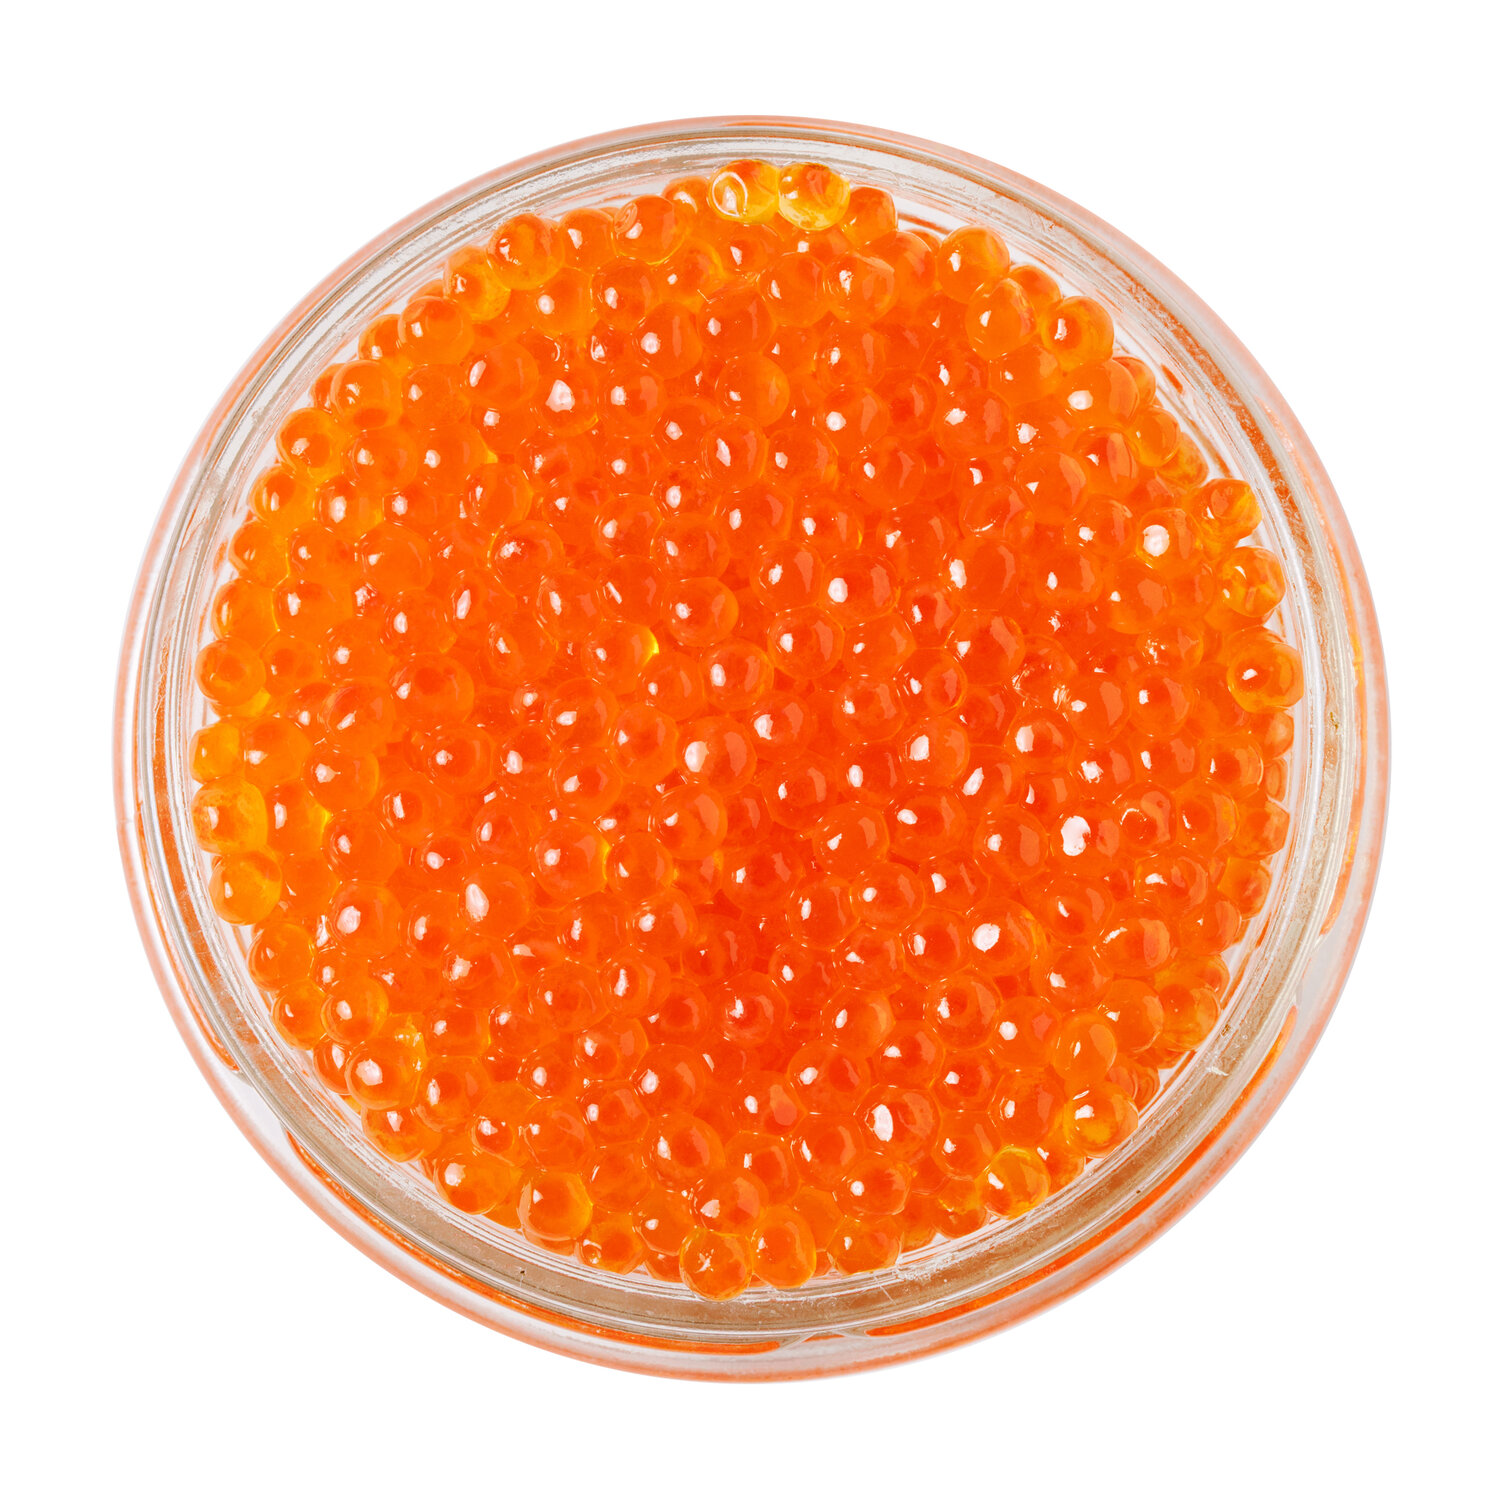 Trout Roe — Regiis Ova Caviar